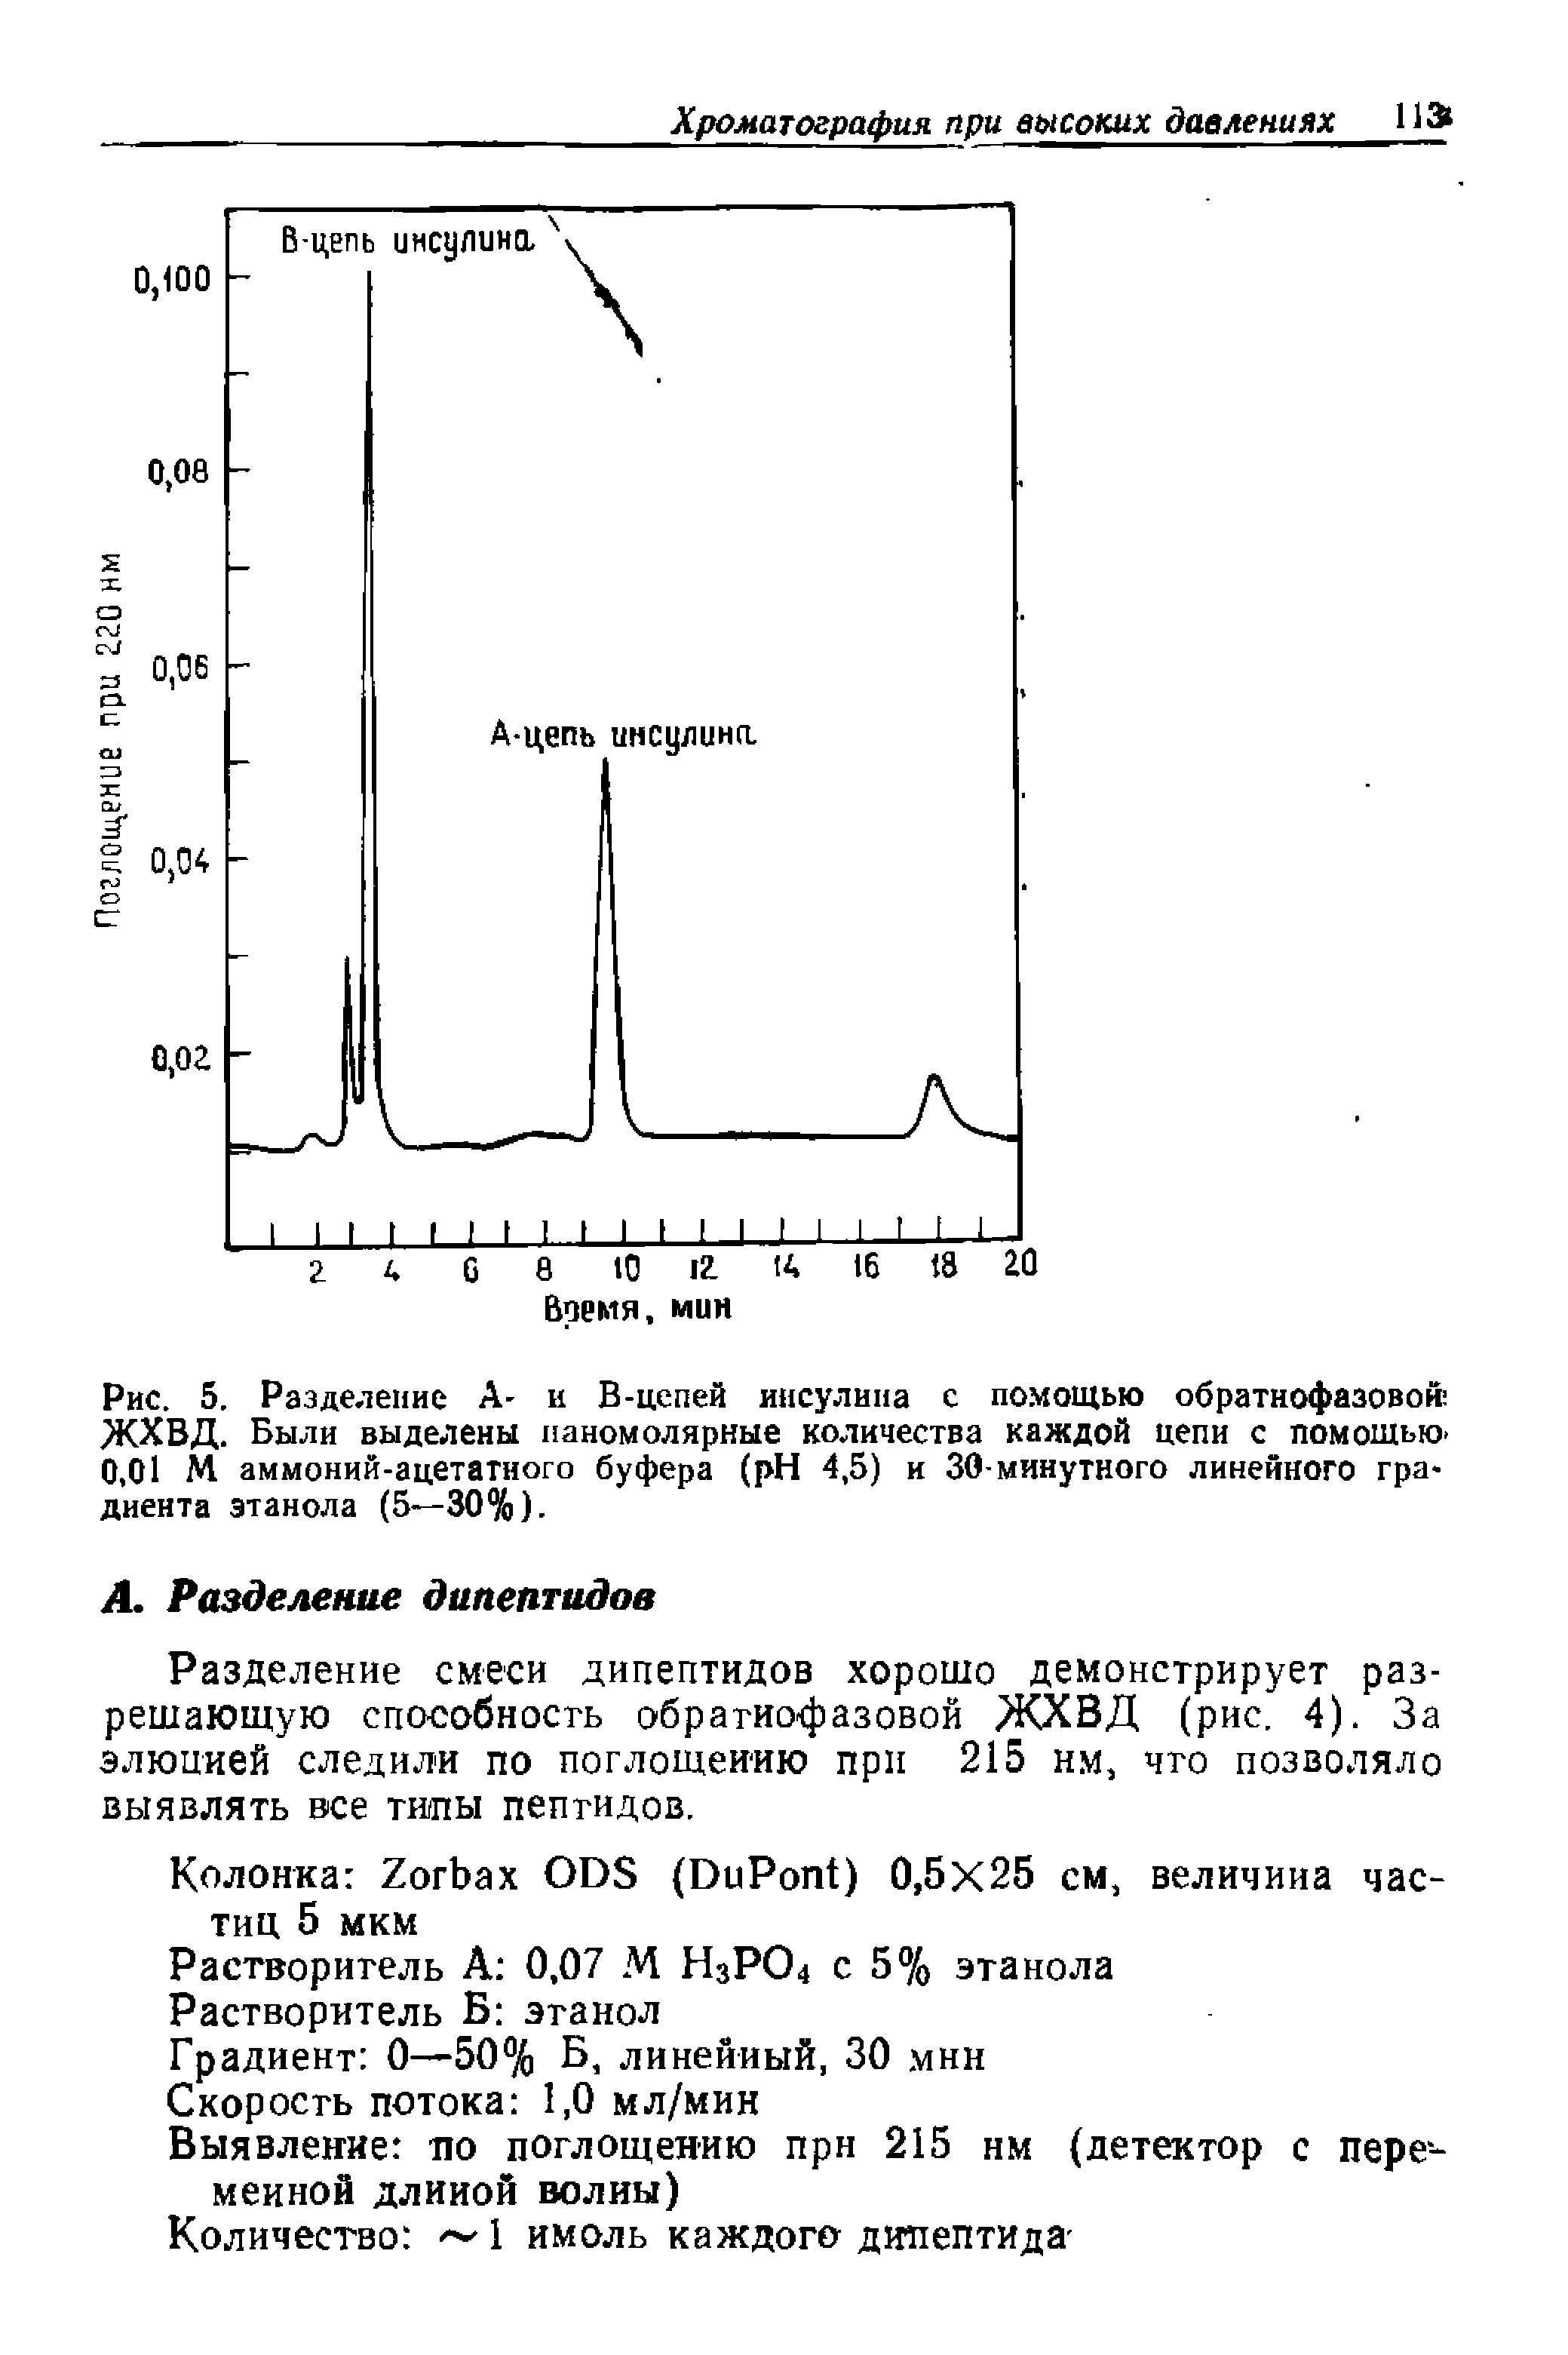 Рис. 5. Разделение А- и В-цепей инсулина с помощью обратнофазовой ЖХВД. Были выделены наномолярные количества каждой цепи с помощью-0,01 М аммоний-ацетатного буфера ( H 4,5) и 30-минутного линейного градиента этанола (5—30%).